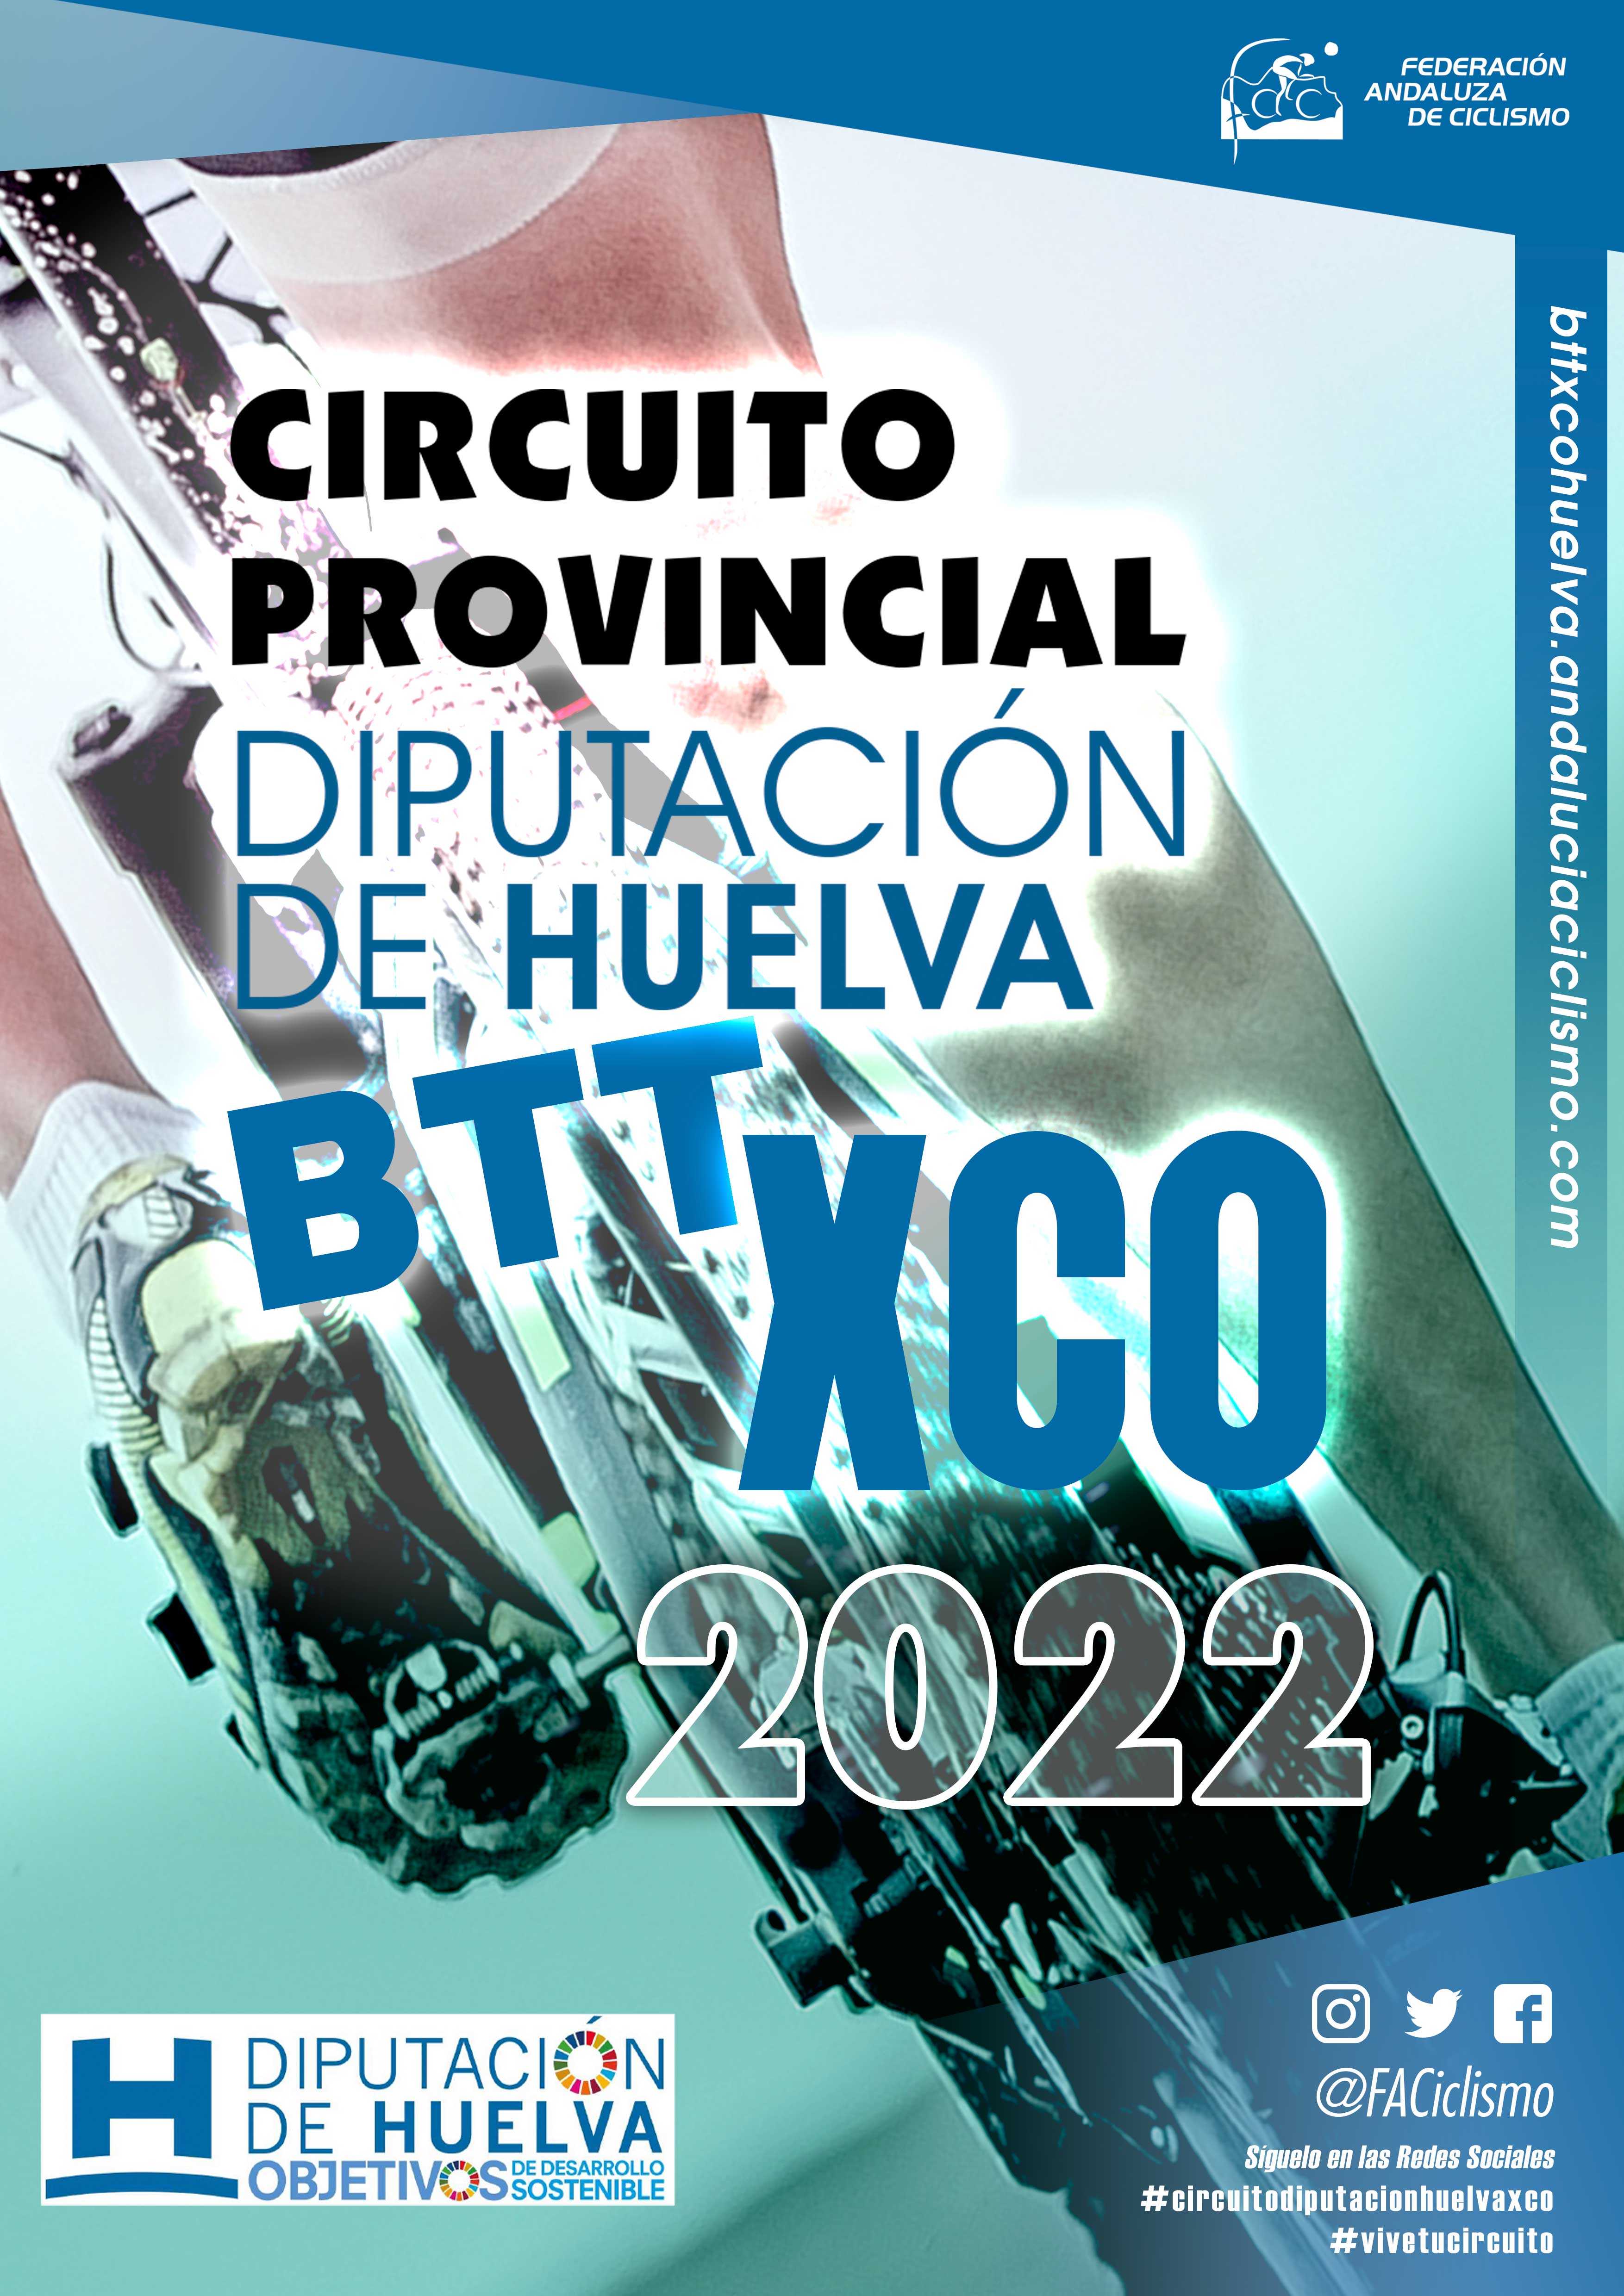 El Circuito Diputación de Huelva BTT XCO 2022 comenzará en Santa Bárbara de Casa